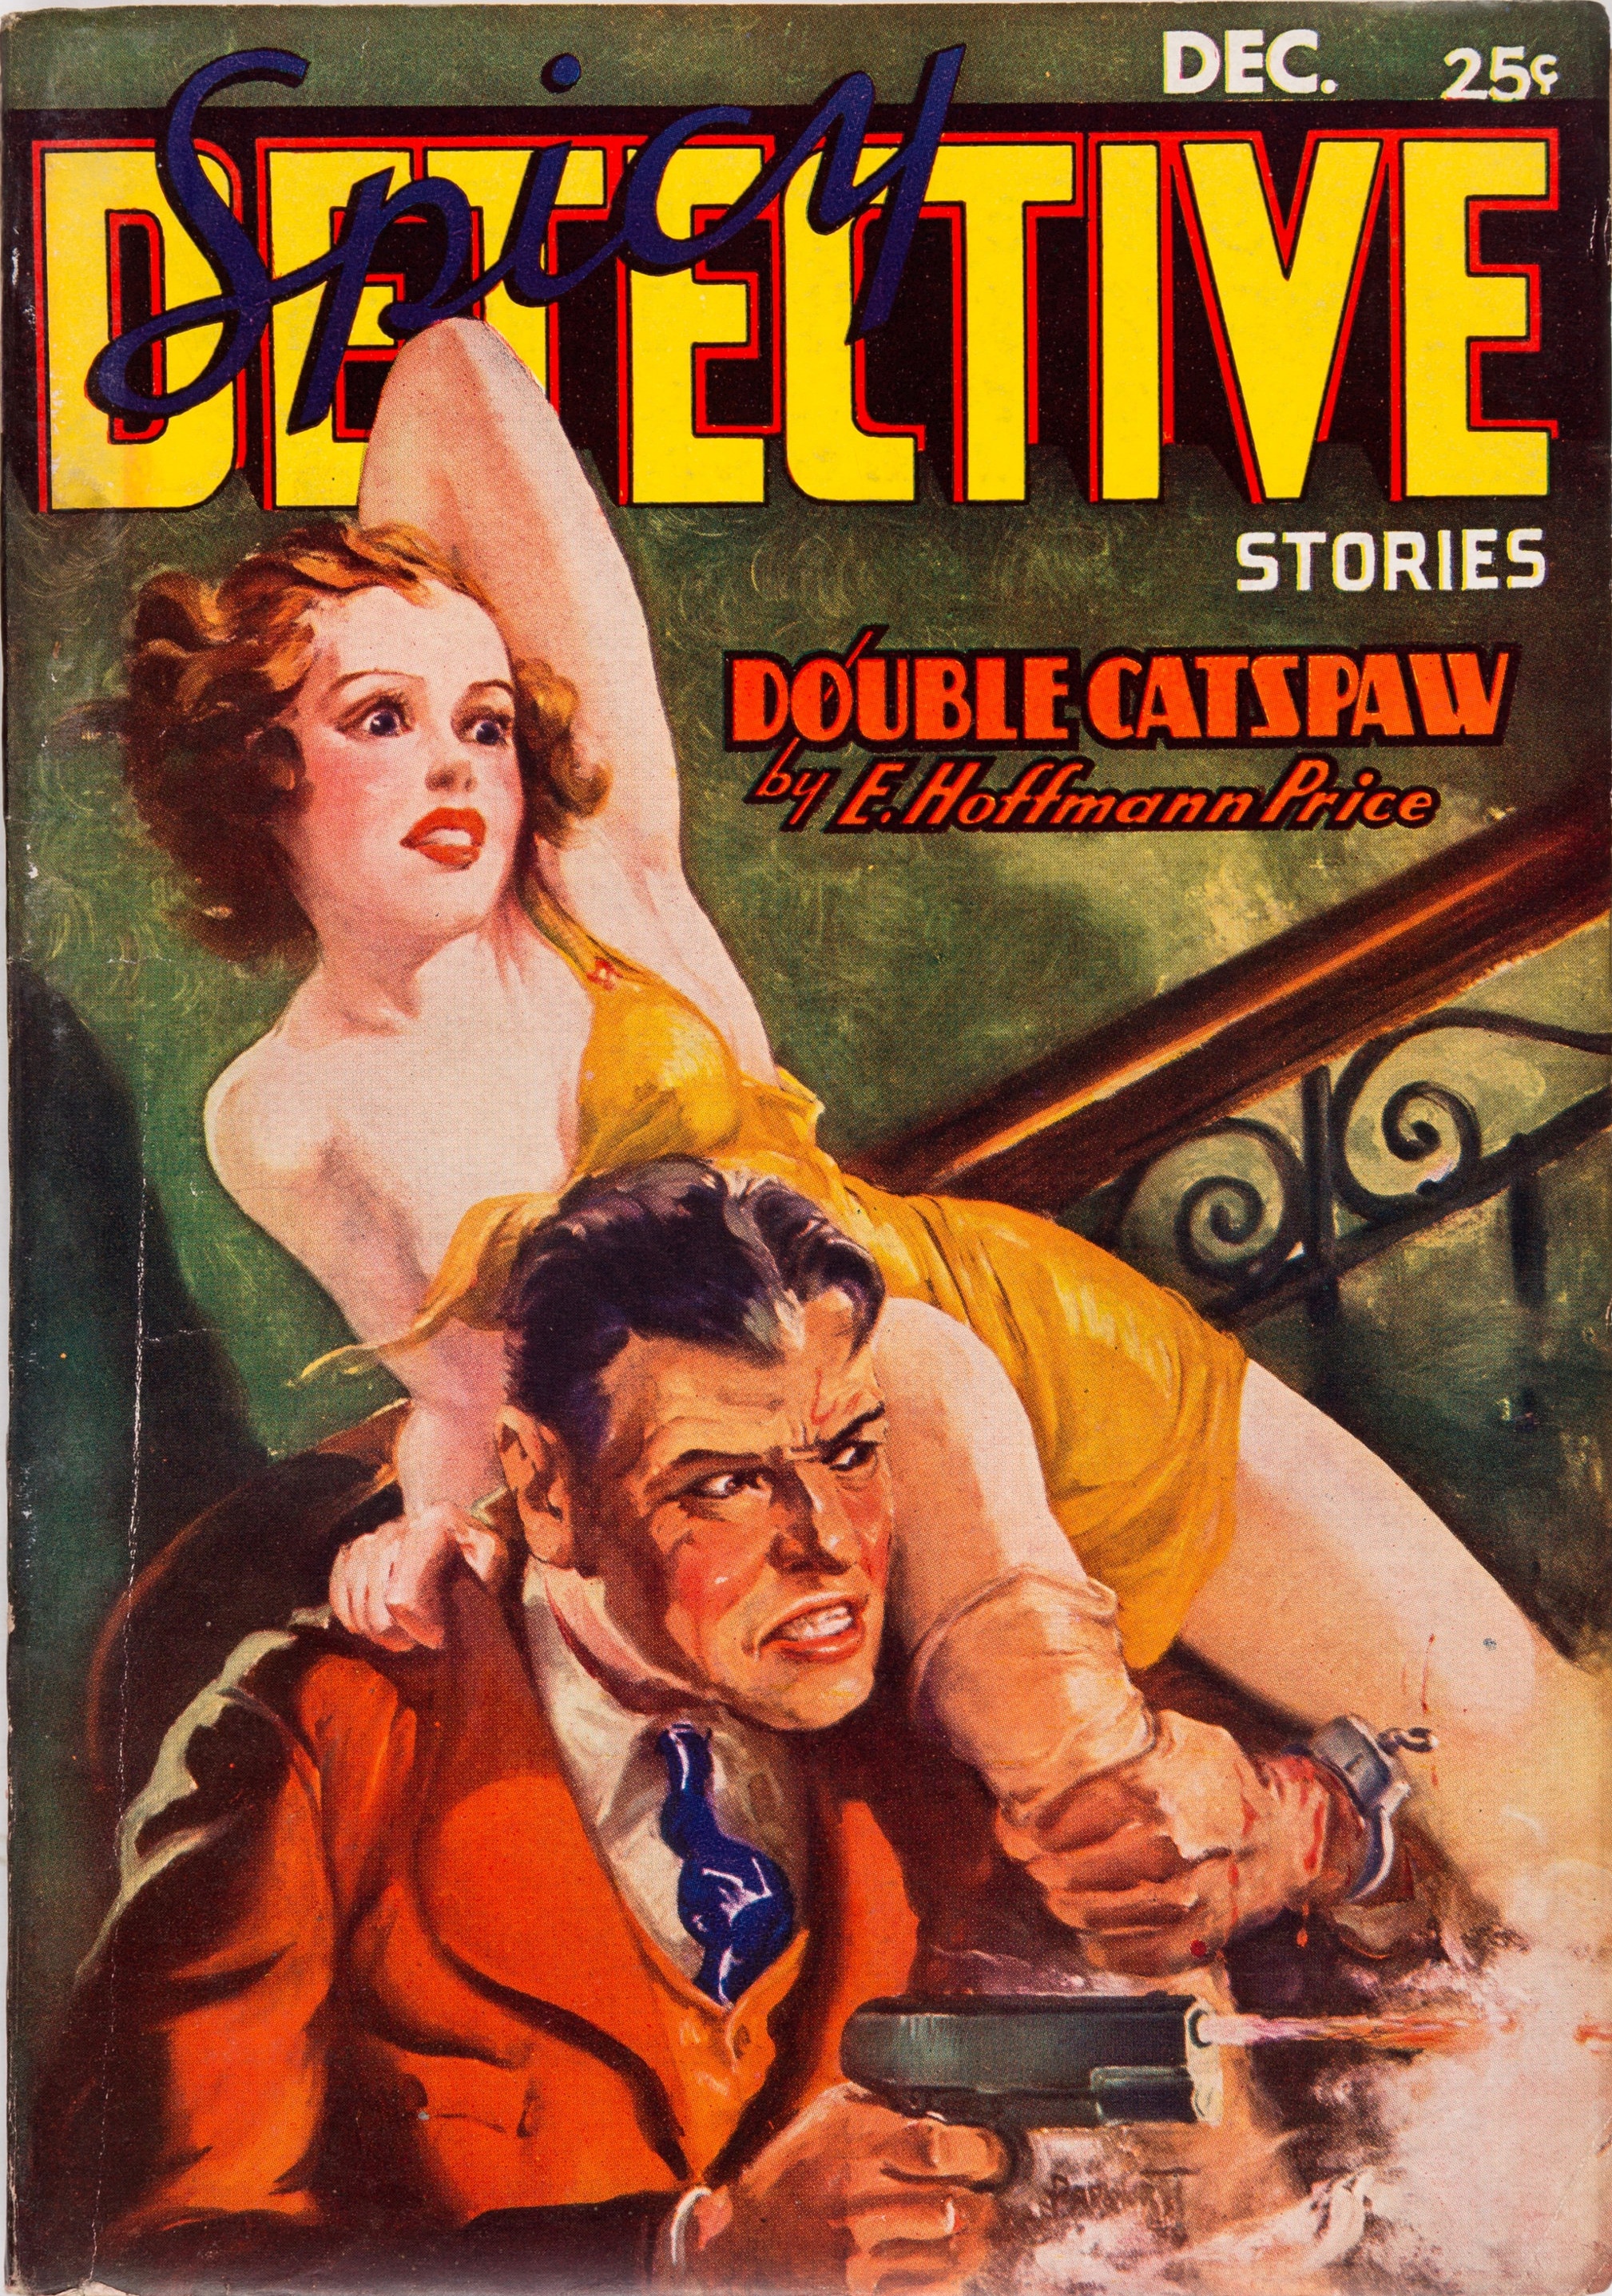 Spicy Detective Stories - December 1936